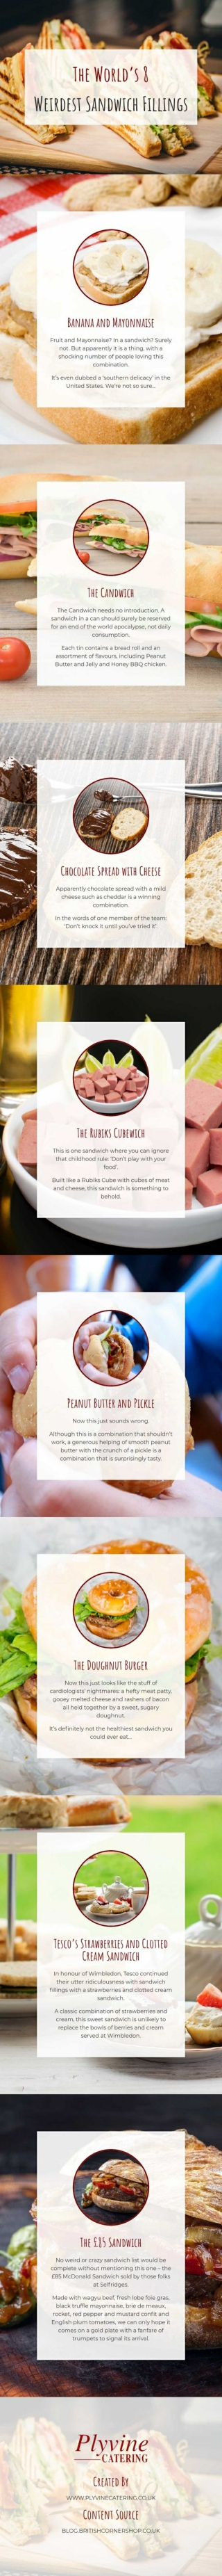 The World’s 8 Weirdest Sandwich Fillings